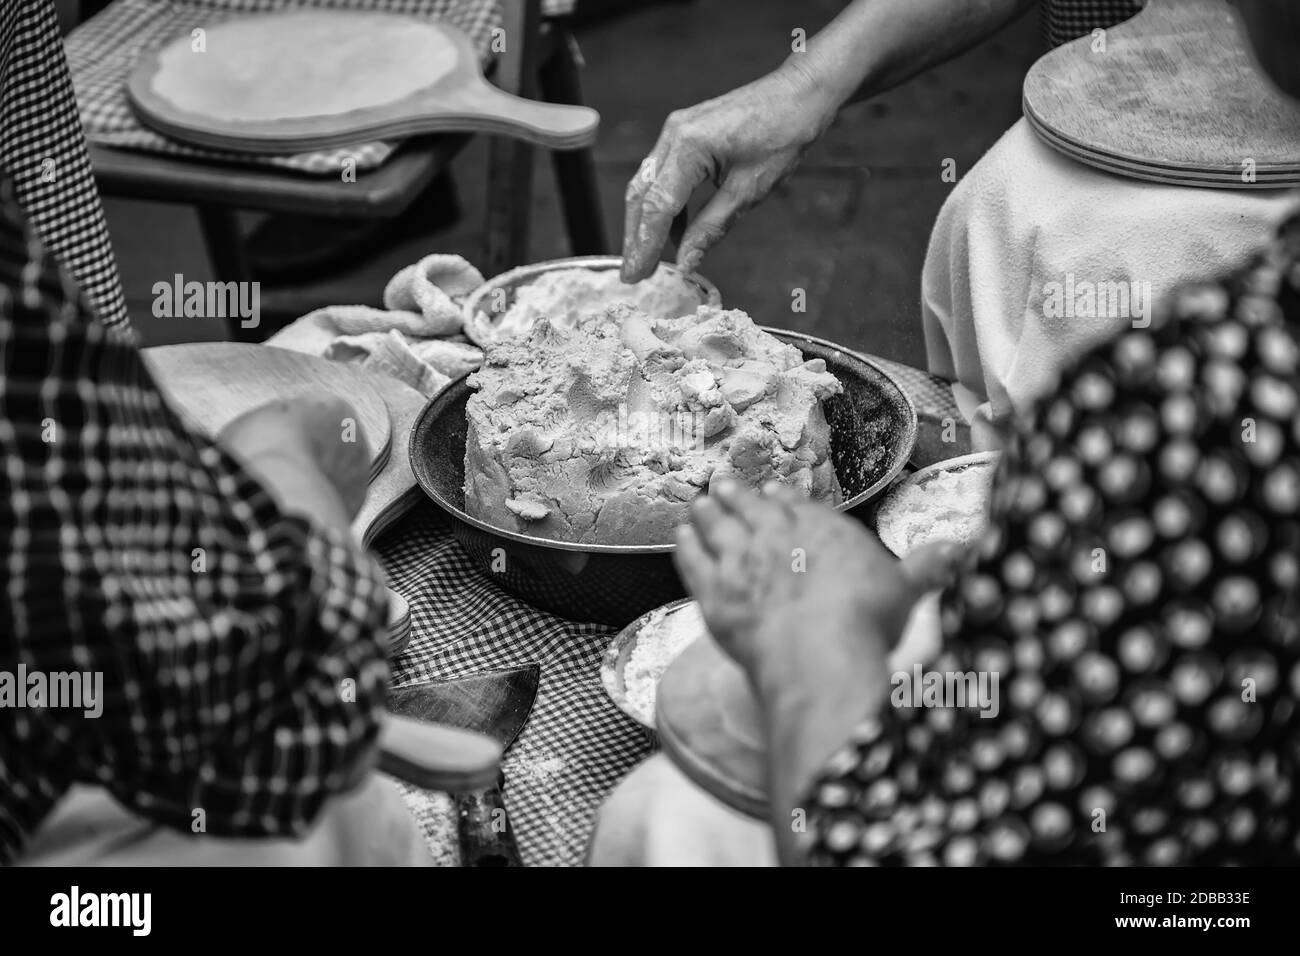 Le pétrissage du pain pita, détail de pain artisanal Banque D'Images